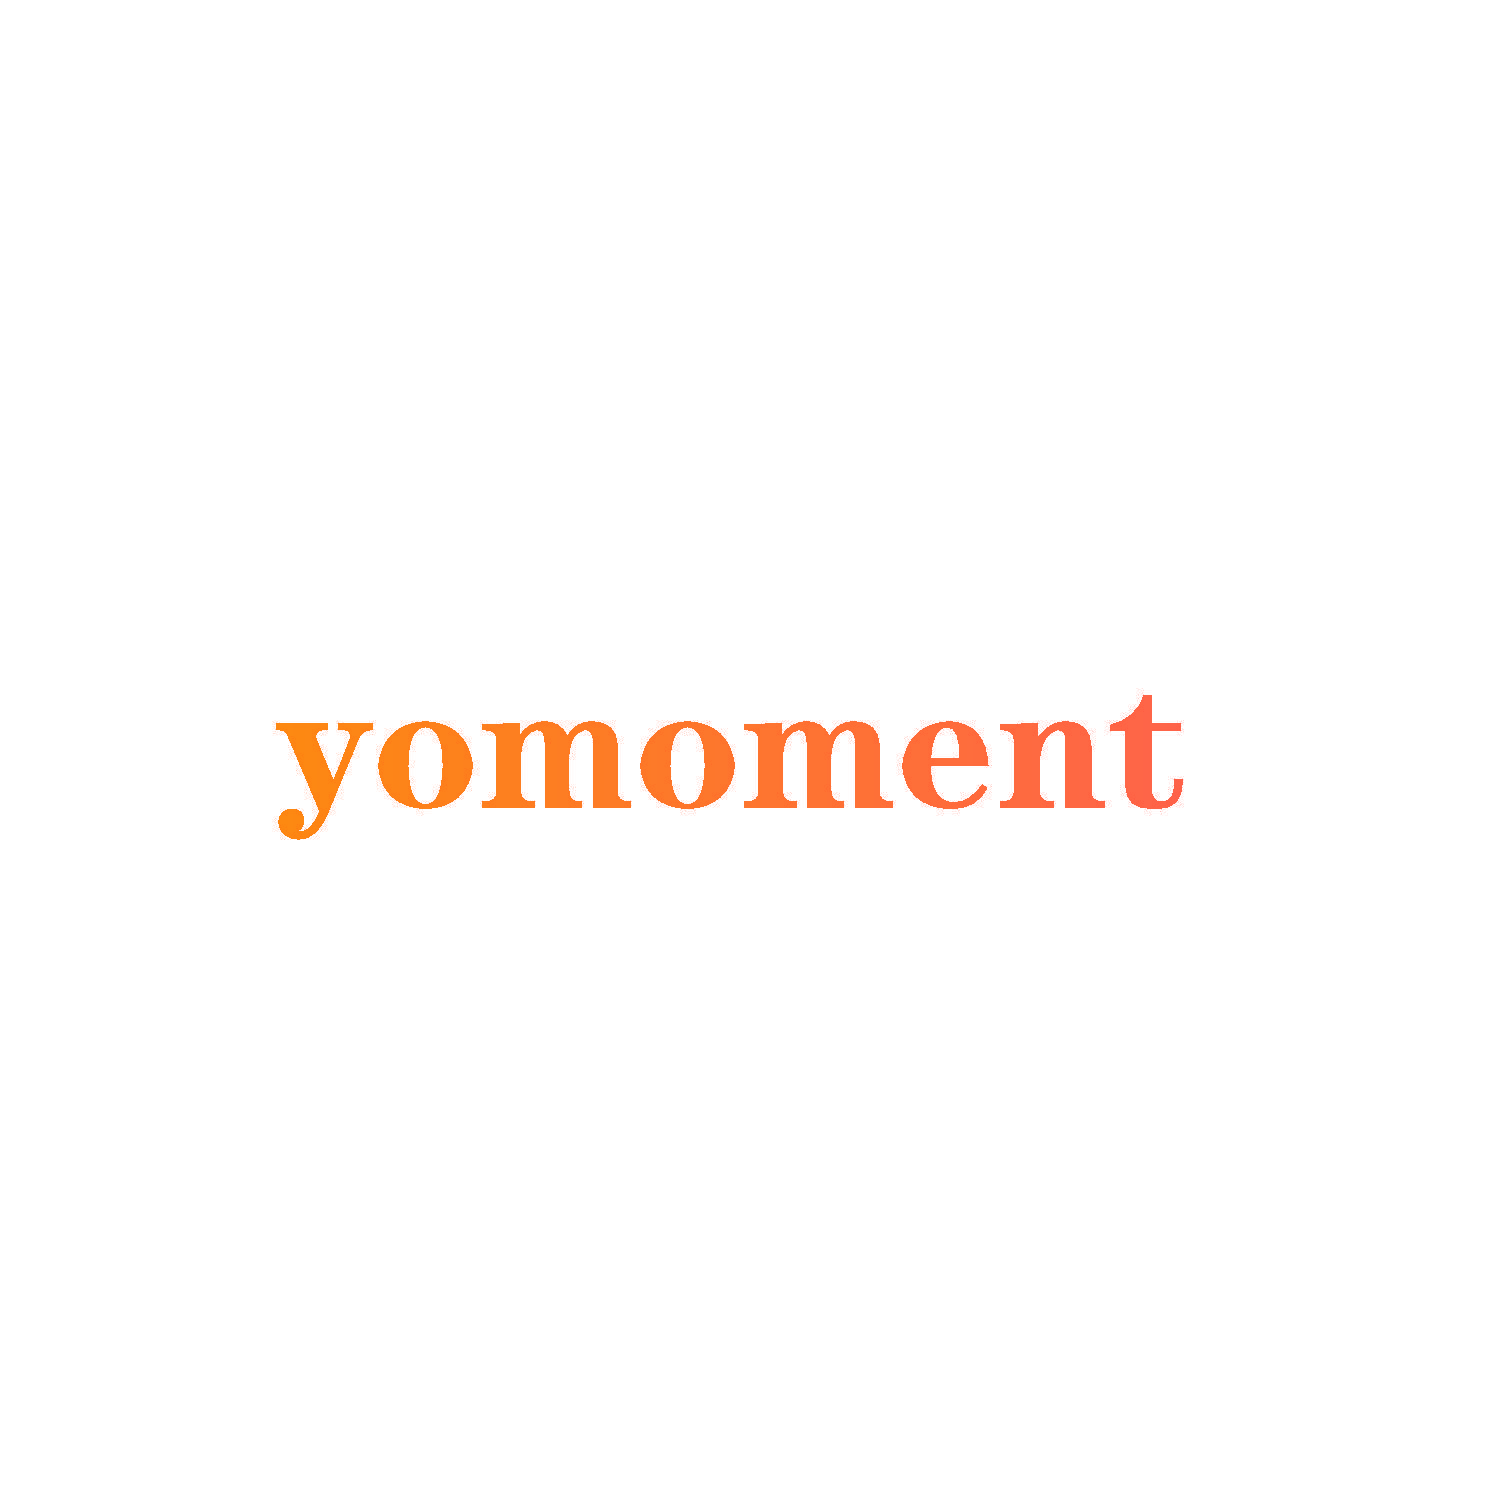 yomoment